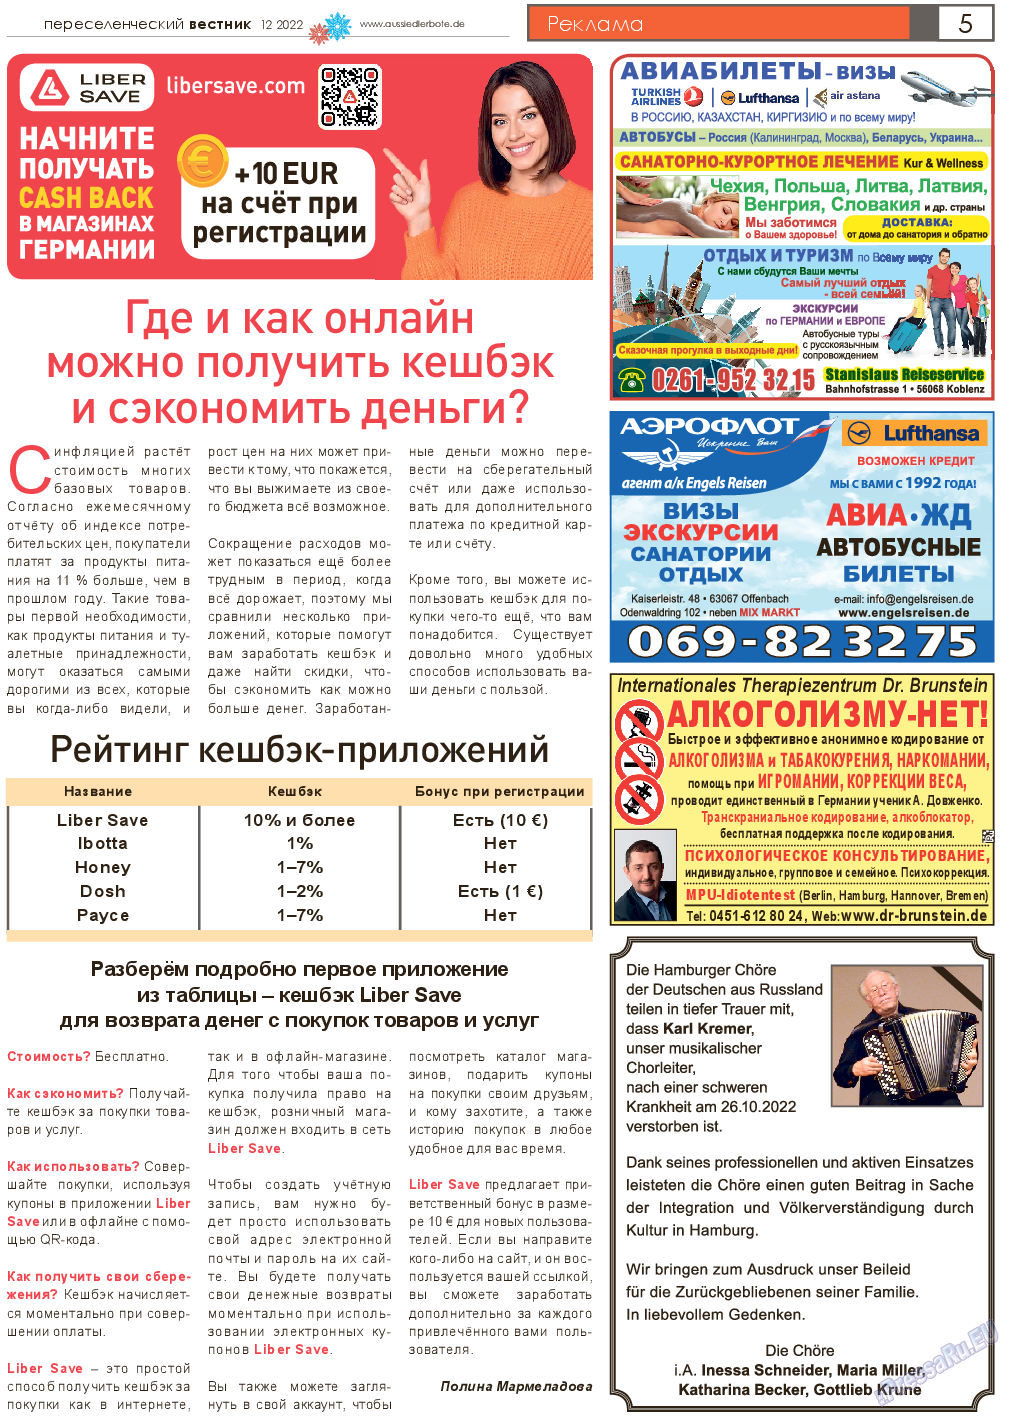 Переселенческий вестник, газета. 2022 №12 стр.5